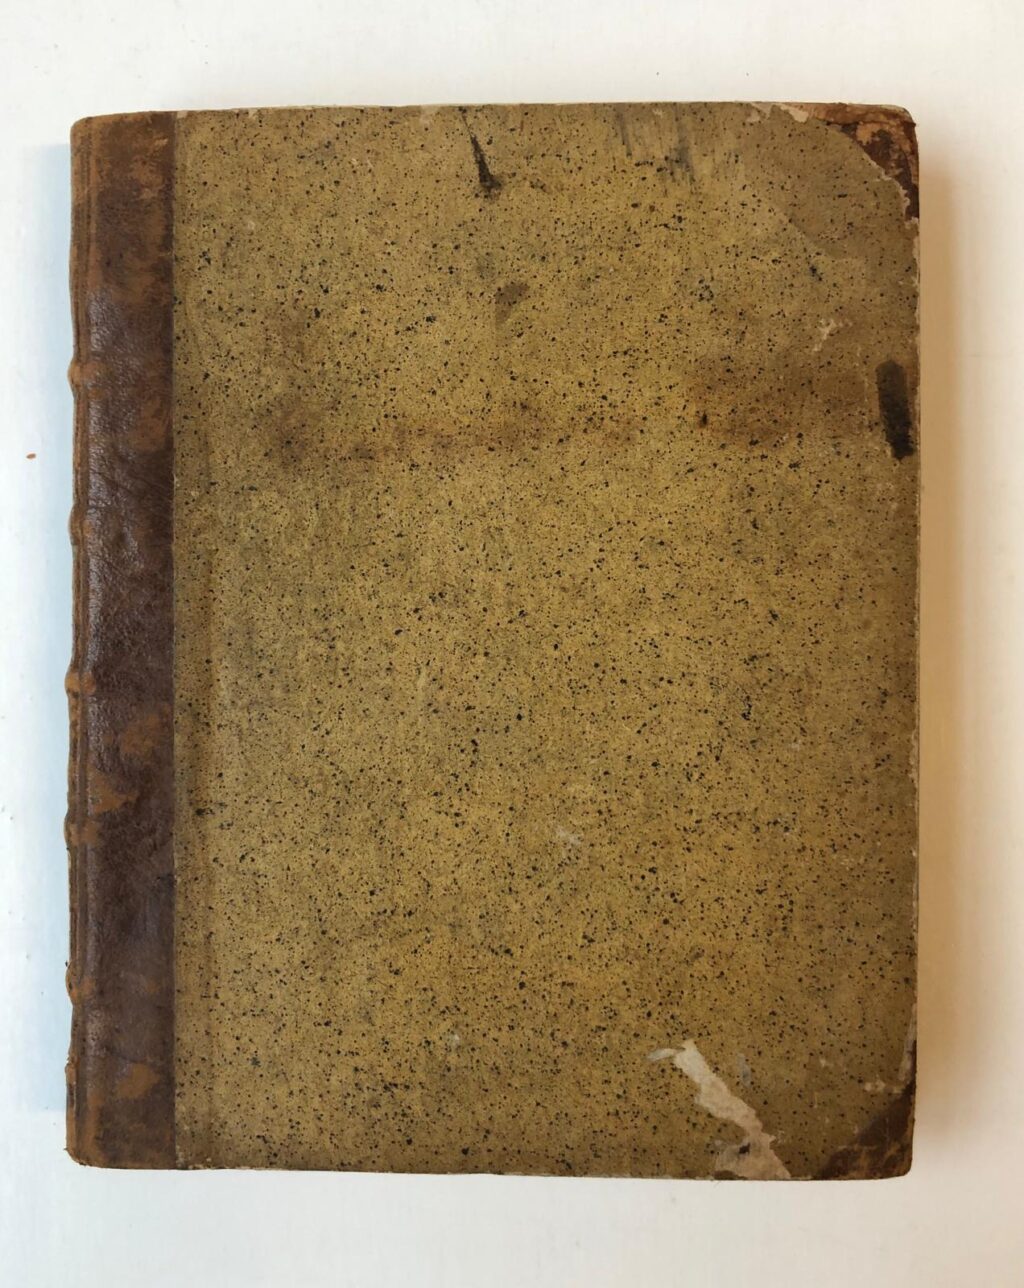 GRATAMA Gratama, Jus Naturae, collegedictaat of manuscript voor een boek. 4(, 226 p., in halfleren band, met deze titel op de rug.